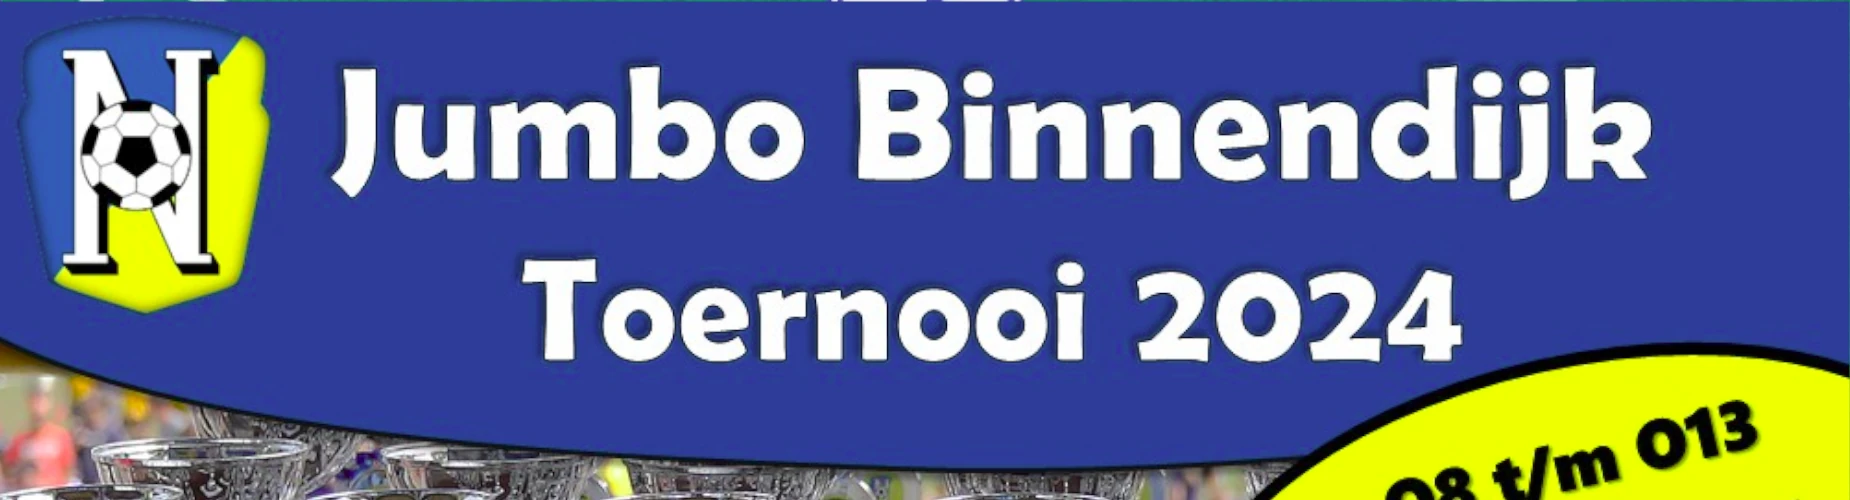 Banner - MO13 - Jumbo Binnendijk Toernooi 2024 - vv Nunspeet - Nunspeet